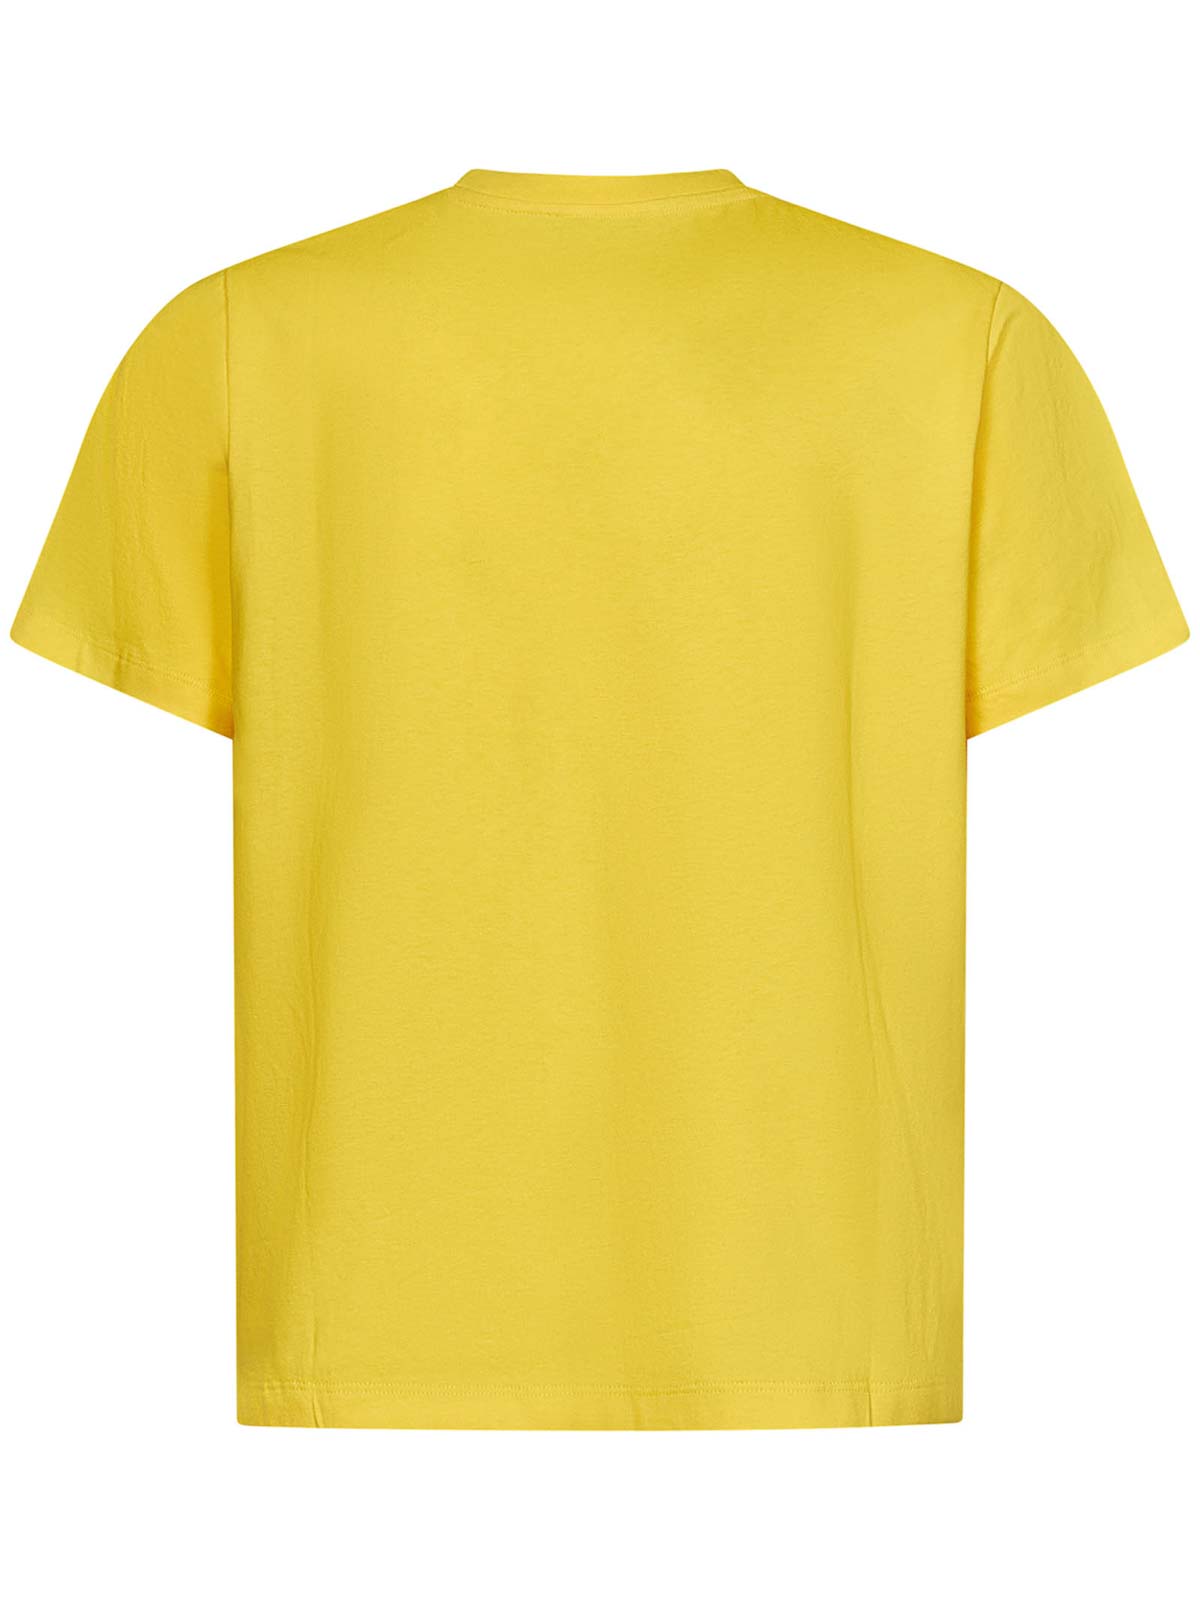 Shop Coperni Camiseta - Amarillo In Yellow